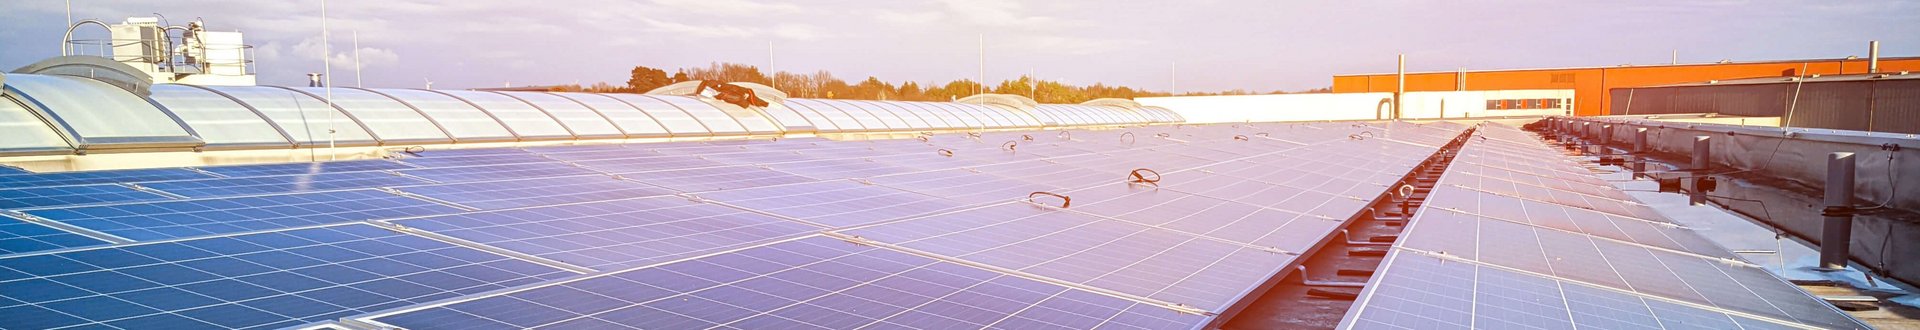 Viele Solaranlagen (Photovoltaik) Panele mit Sonnenschein auf dem Firmendach von Lebosol und Semfill